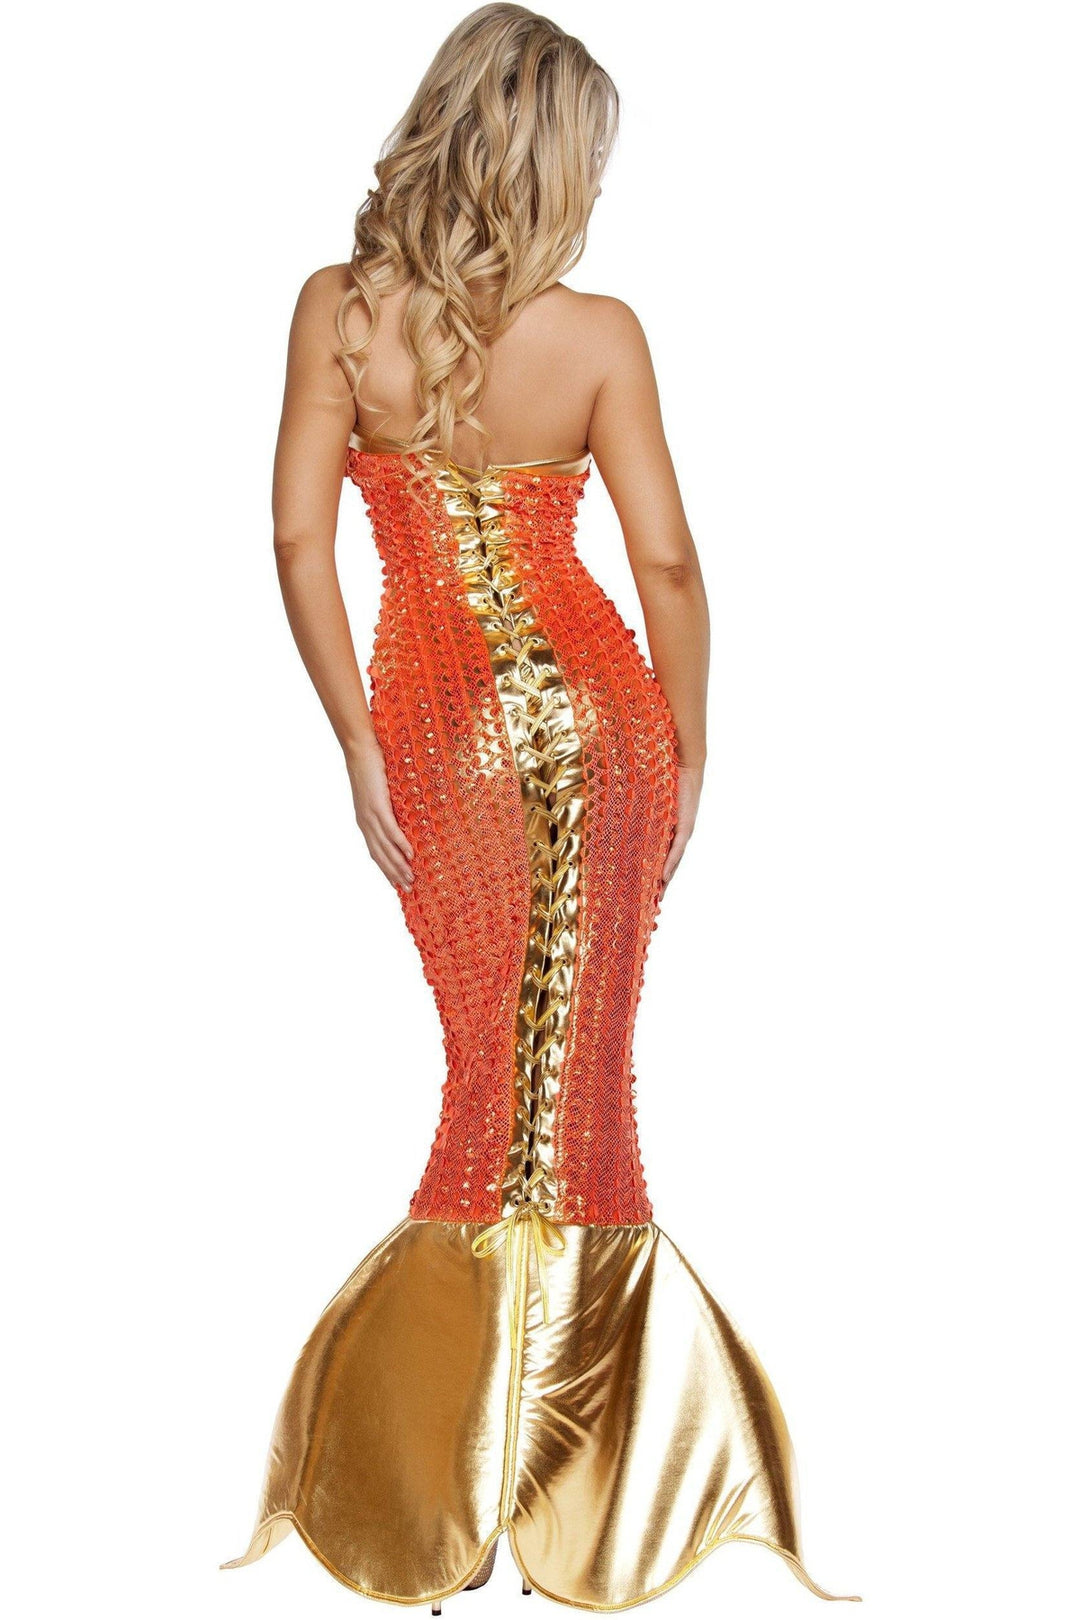 Roma Seductive Ocean Siren Costume-SEXYSHOES.COM